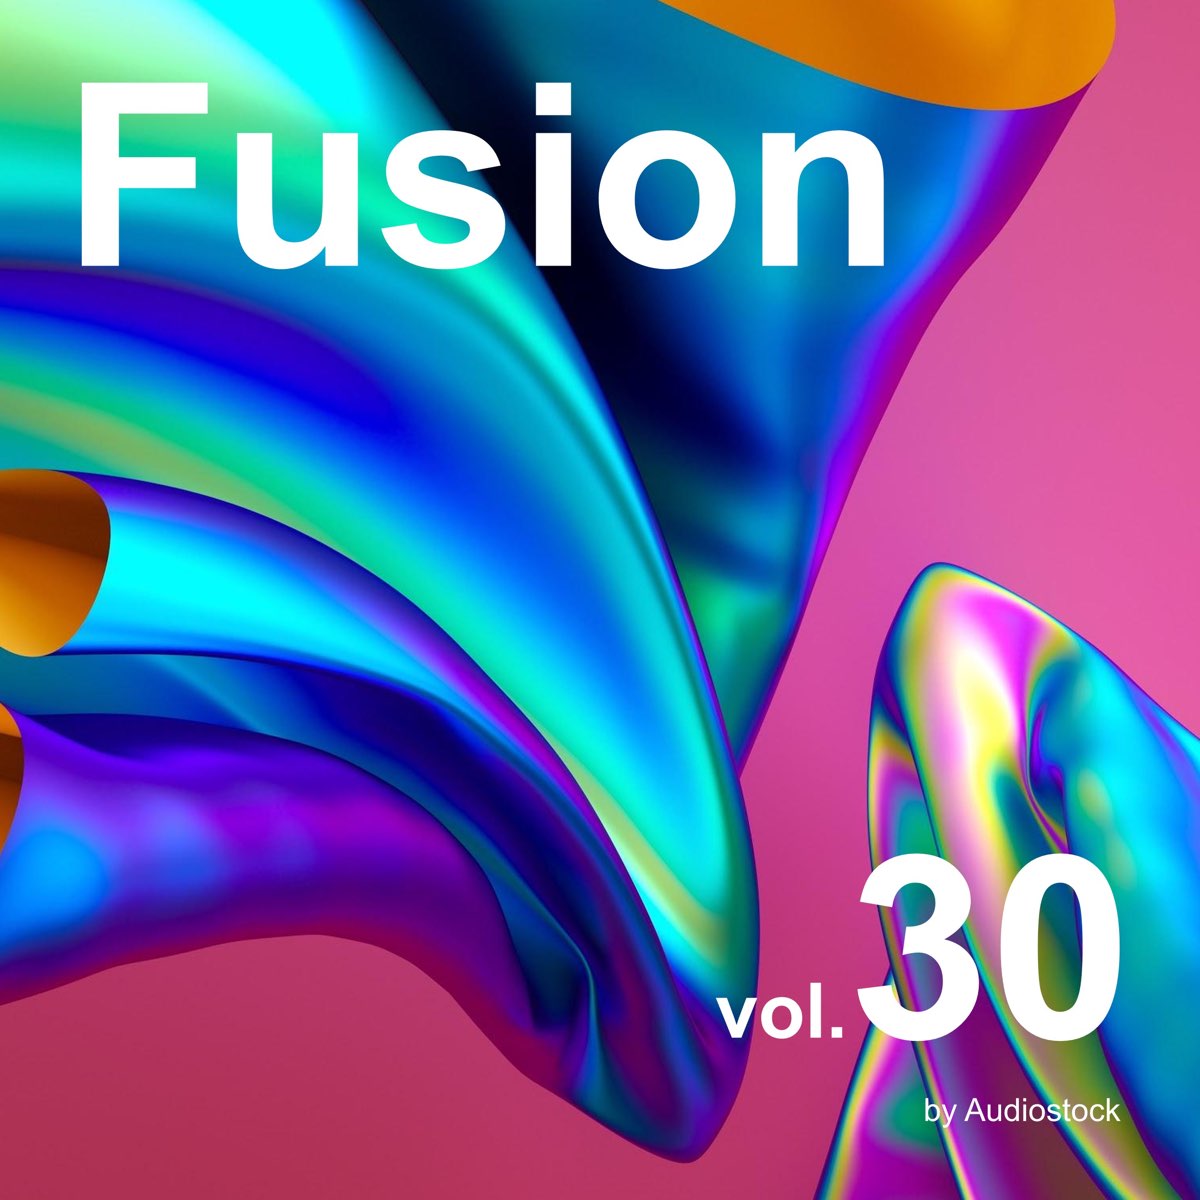 ‎ヴァリアス・アーティストの「フュージョン Vol 30 Instrumental Bgm By Audiostock」をapple Musicで 